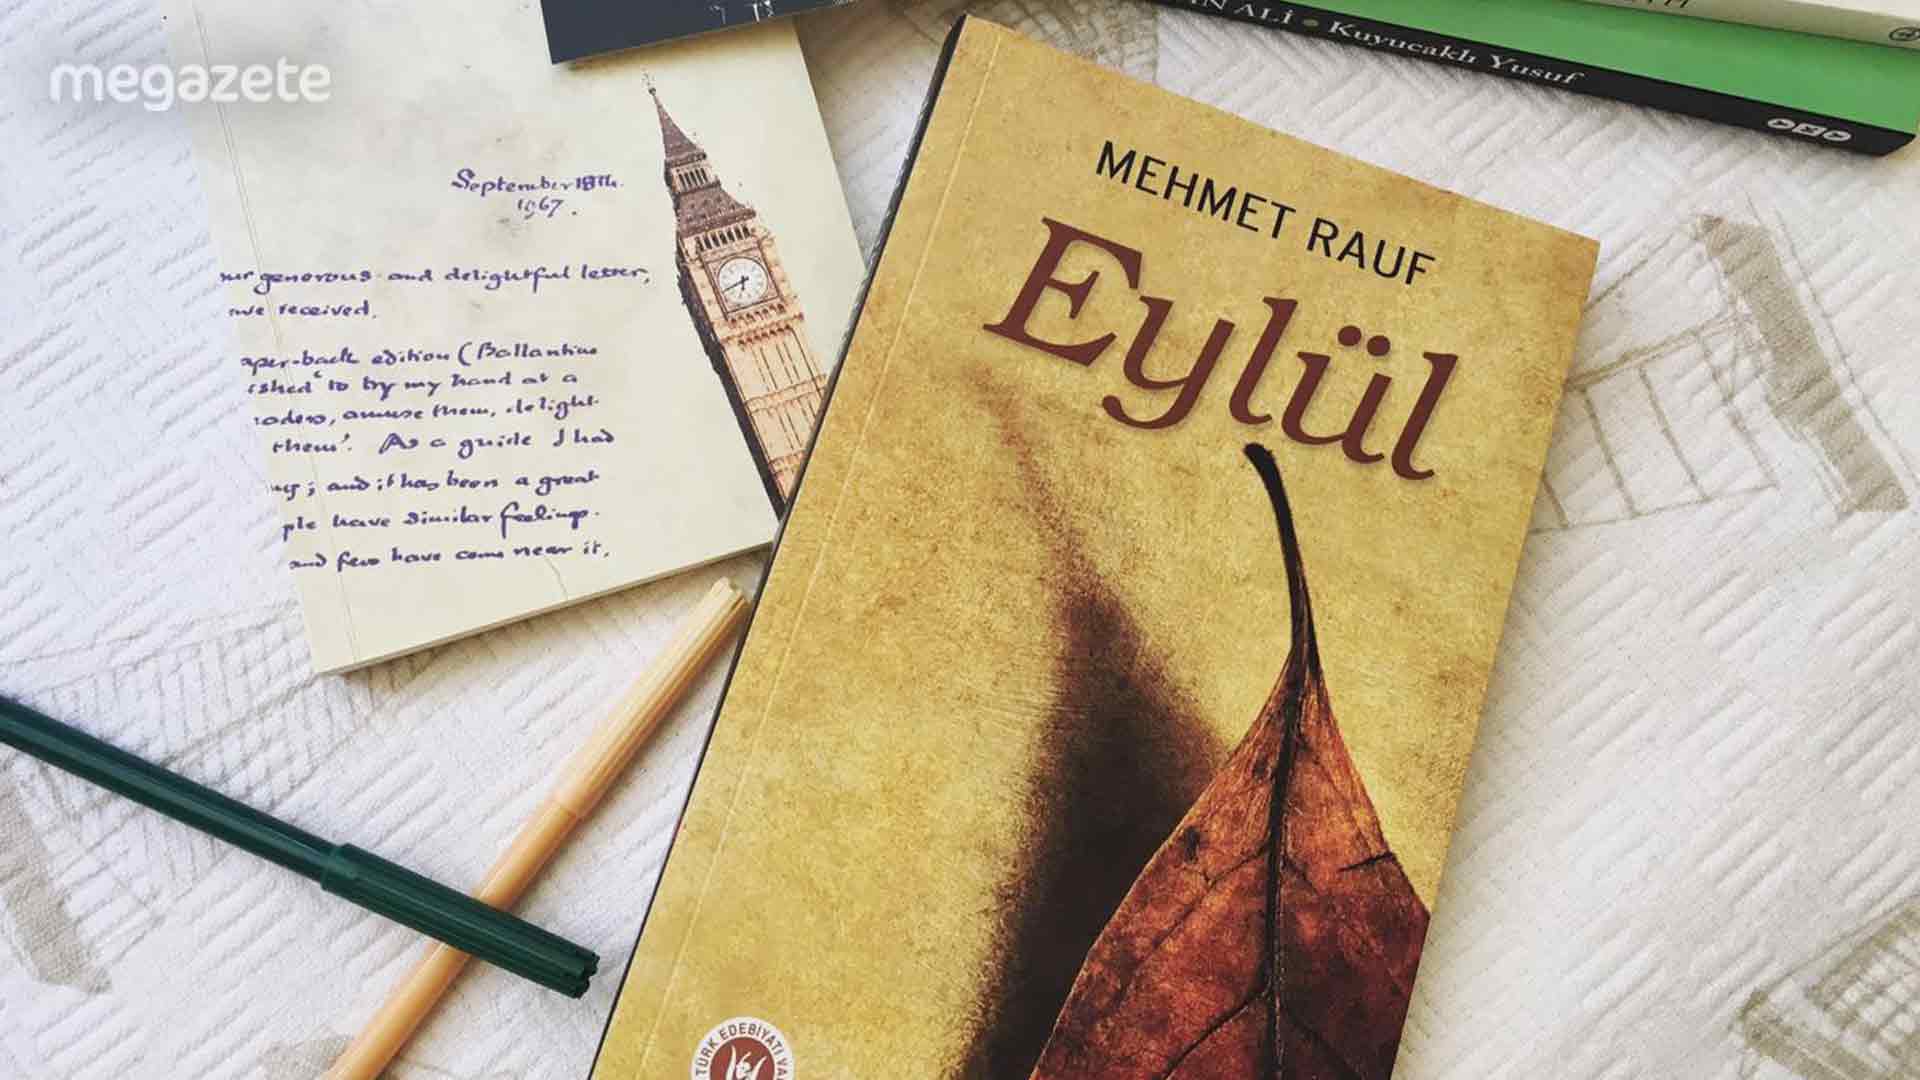 Eylül – Mehmet Rauf